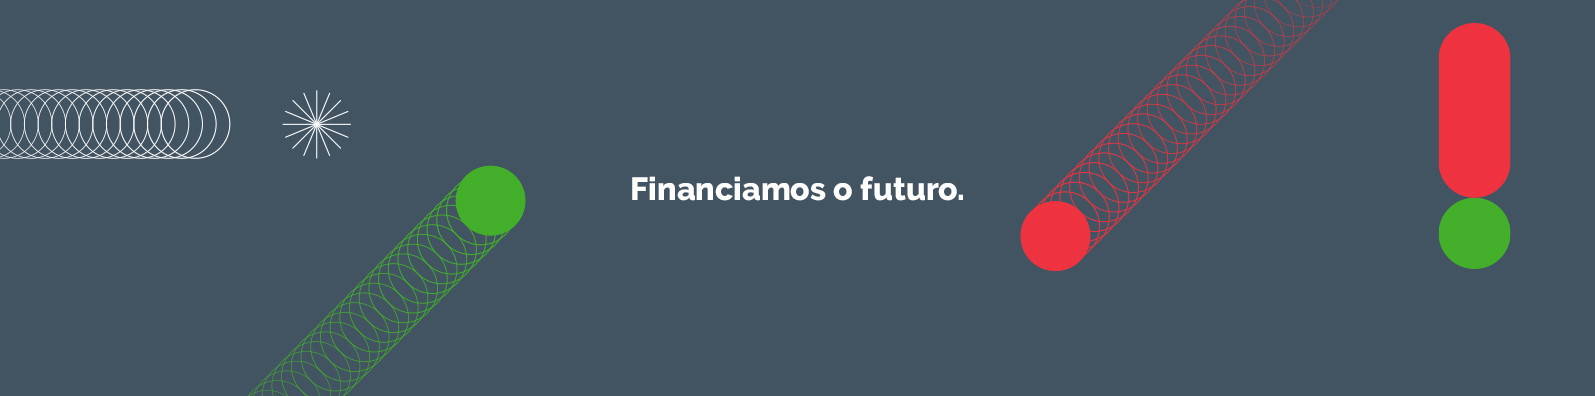 Banco Português de Fomento